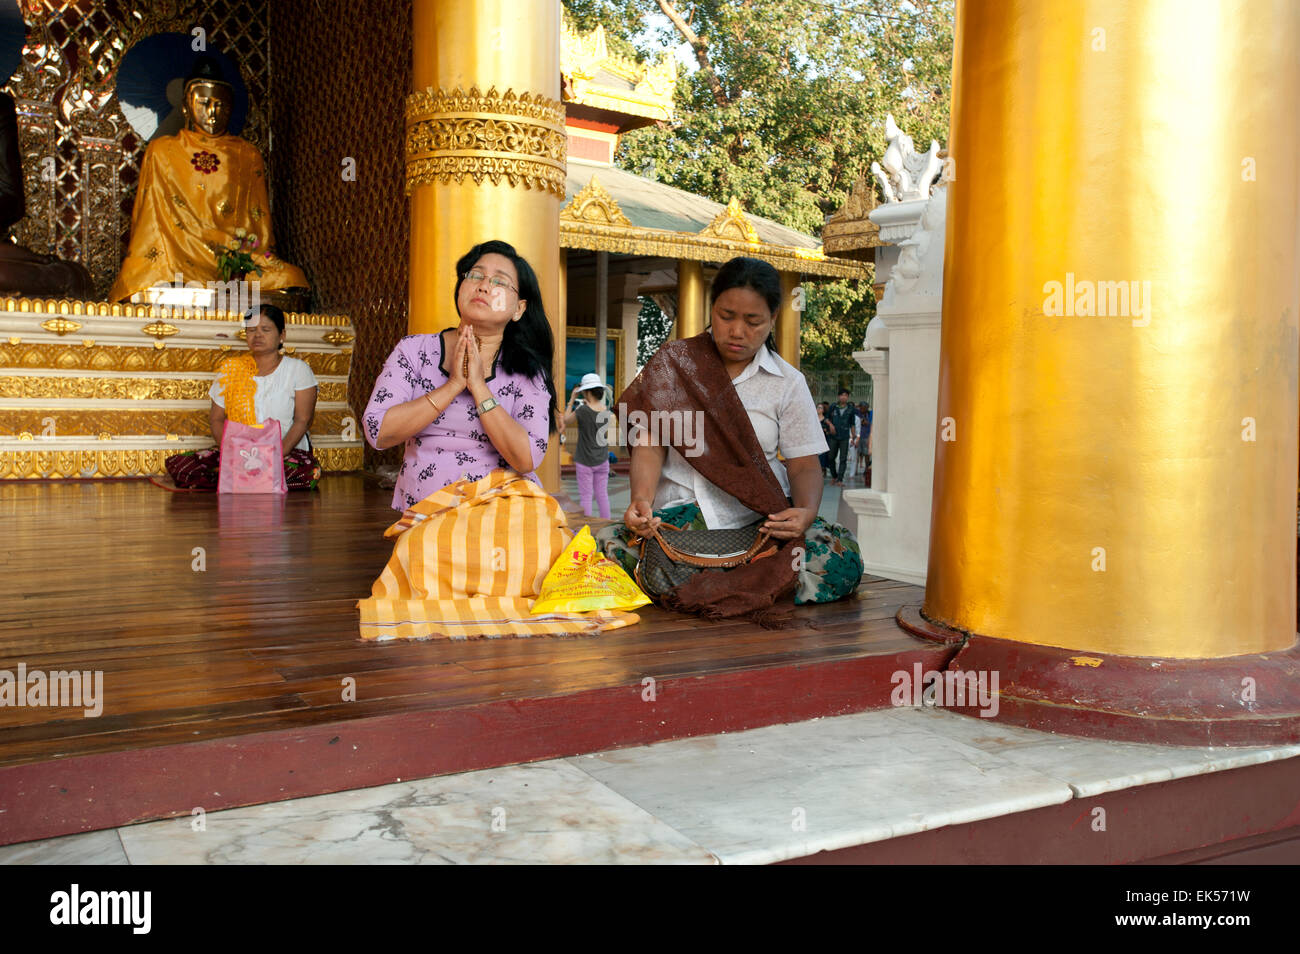 Worshipers sit praying on a platform at the Shwedagon pagoda in Yangon Myanmar Stock Photo